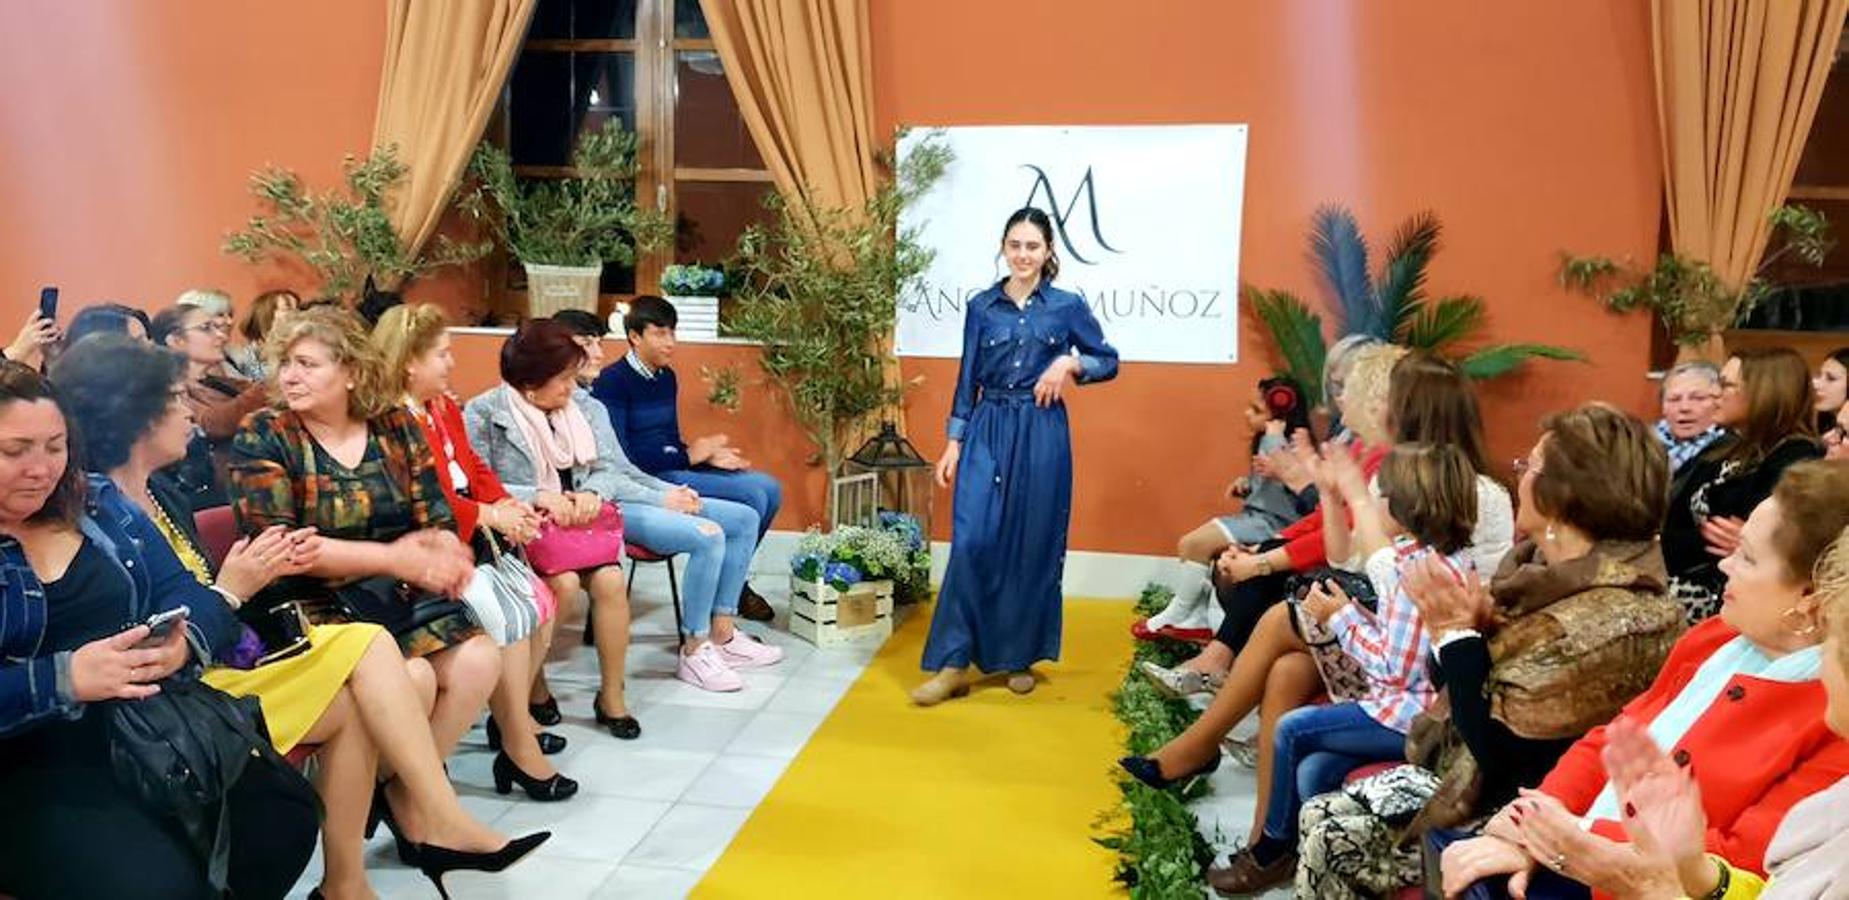 La empresaria presenta la nueva colección de moda en un desfile que reunió a más de cien personas en el salón de actos de La Alcoholera de Adra